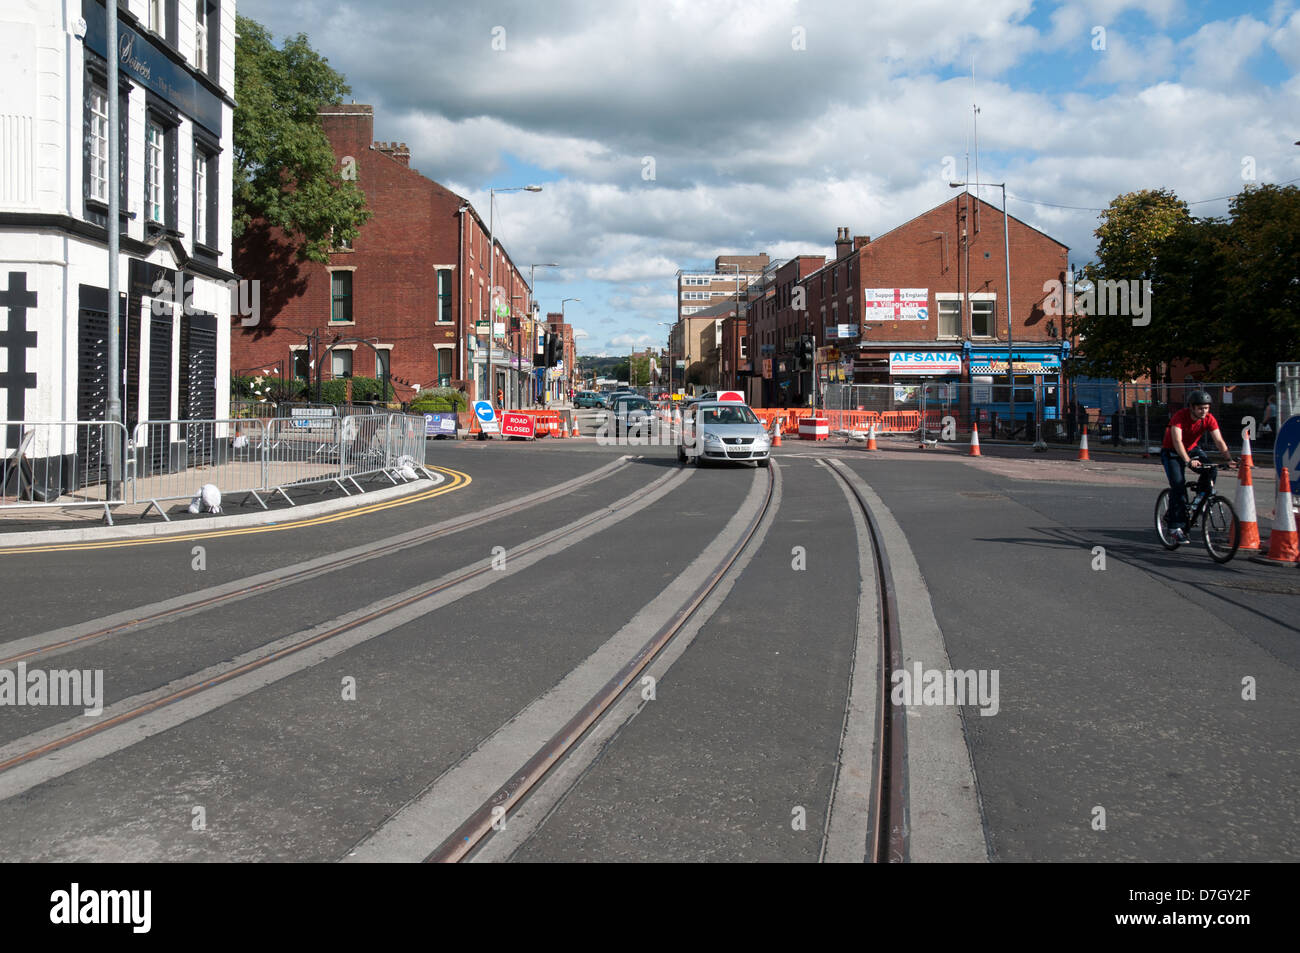 Voies de tram s'est achevée récemment, rue Union, Oldham, Greater Manchester, Angleterre, RU Banque D'Images